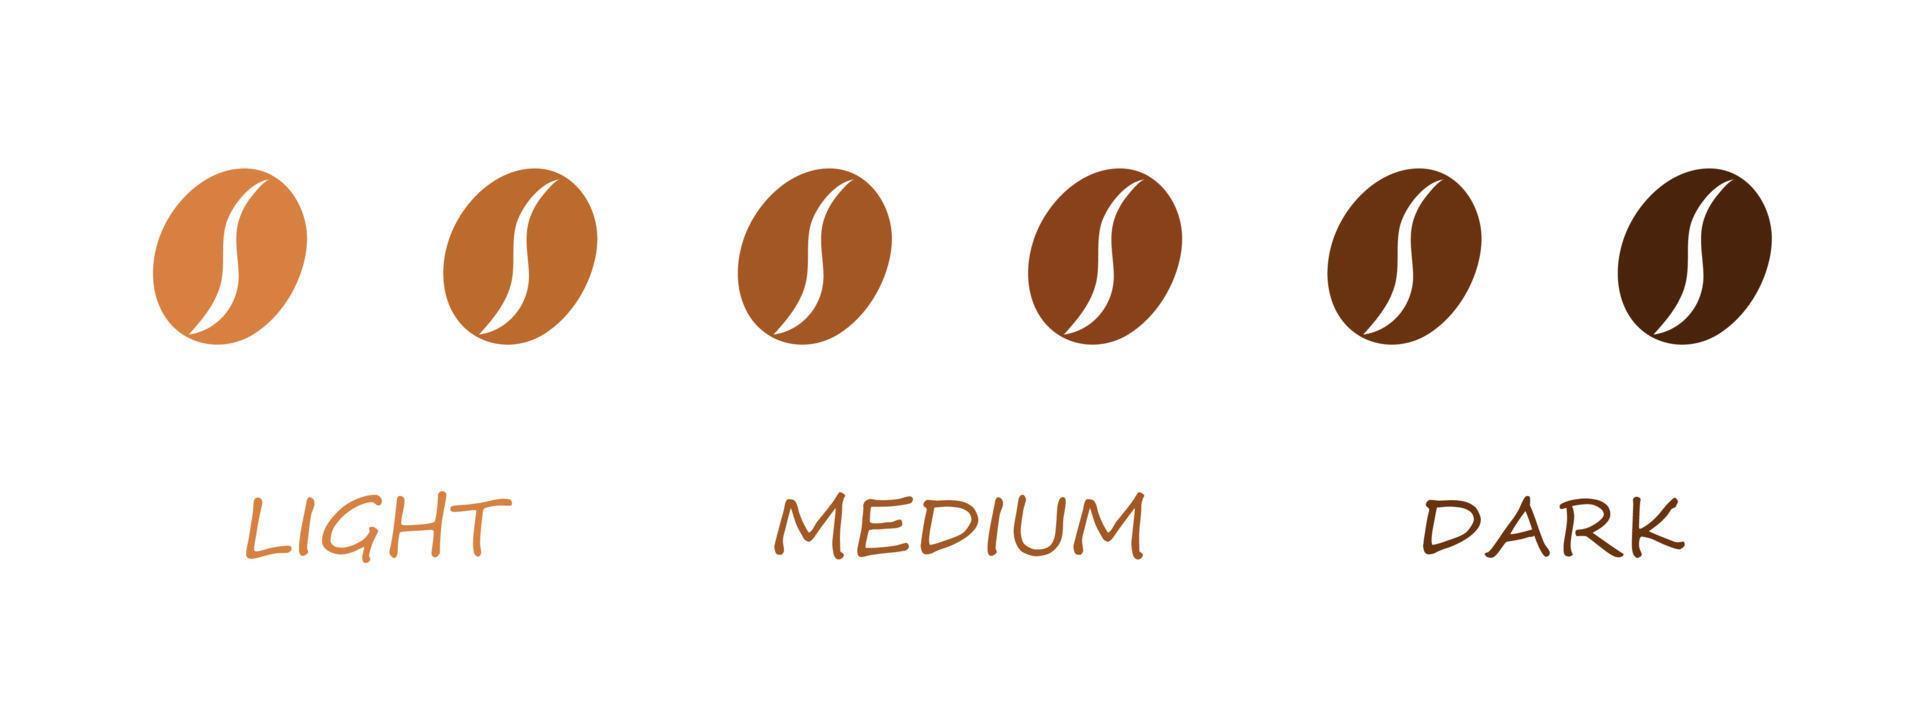 kafferostnivå - ljus, medium, mörk ikon. vektor illustration. kaffebönor isolerad på vit bakgrund.